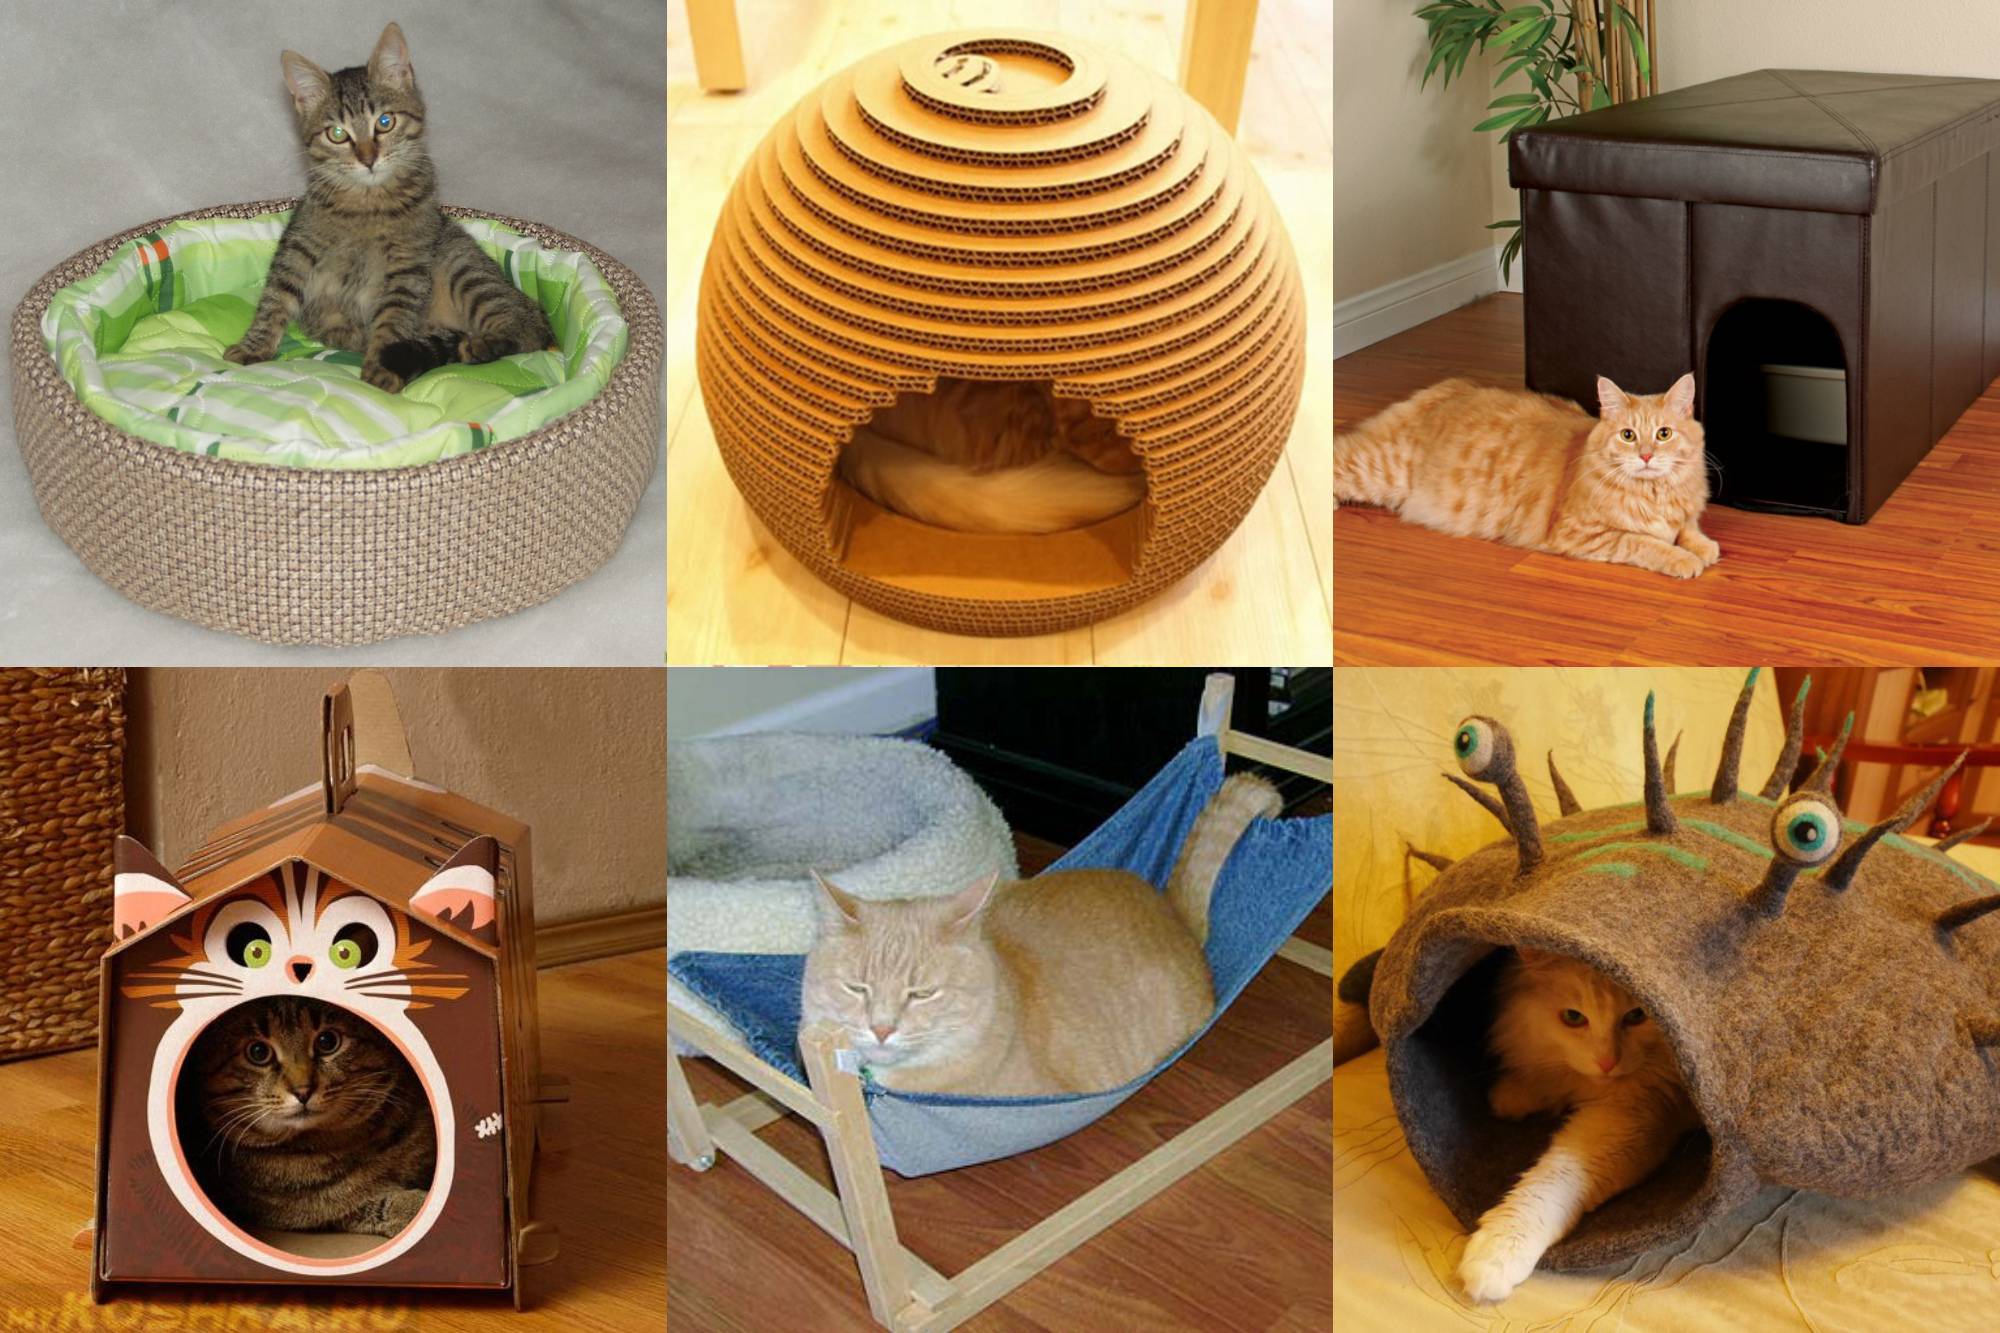 Лежанка для кошки своими руками: виды конструкций, материалы изготовления + мастер-класс для изготовления своими руками